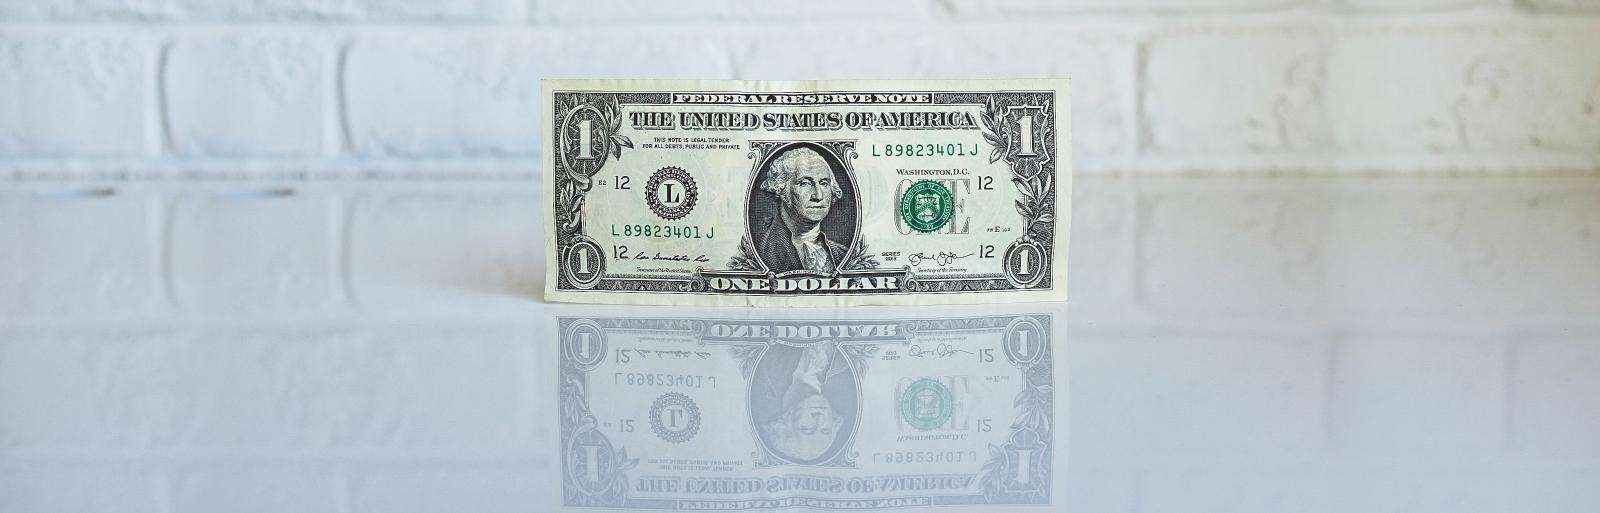 dollar bill on white background